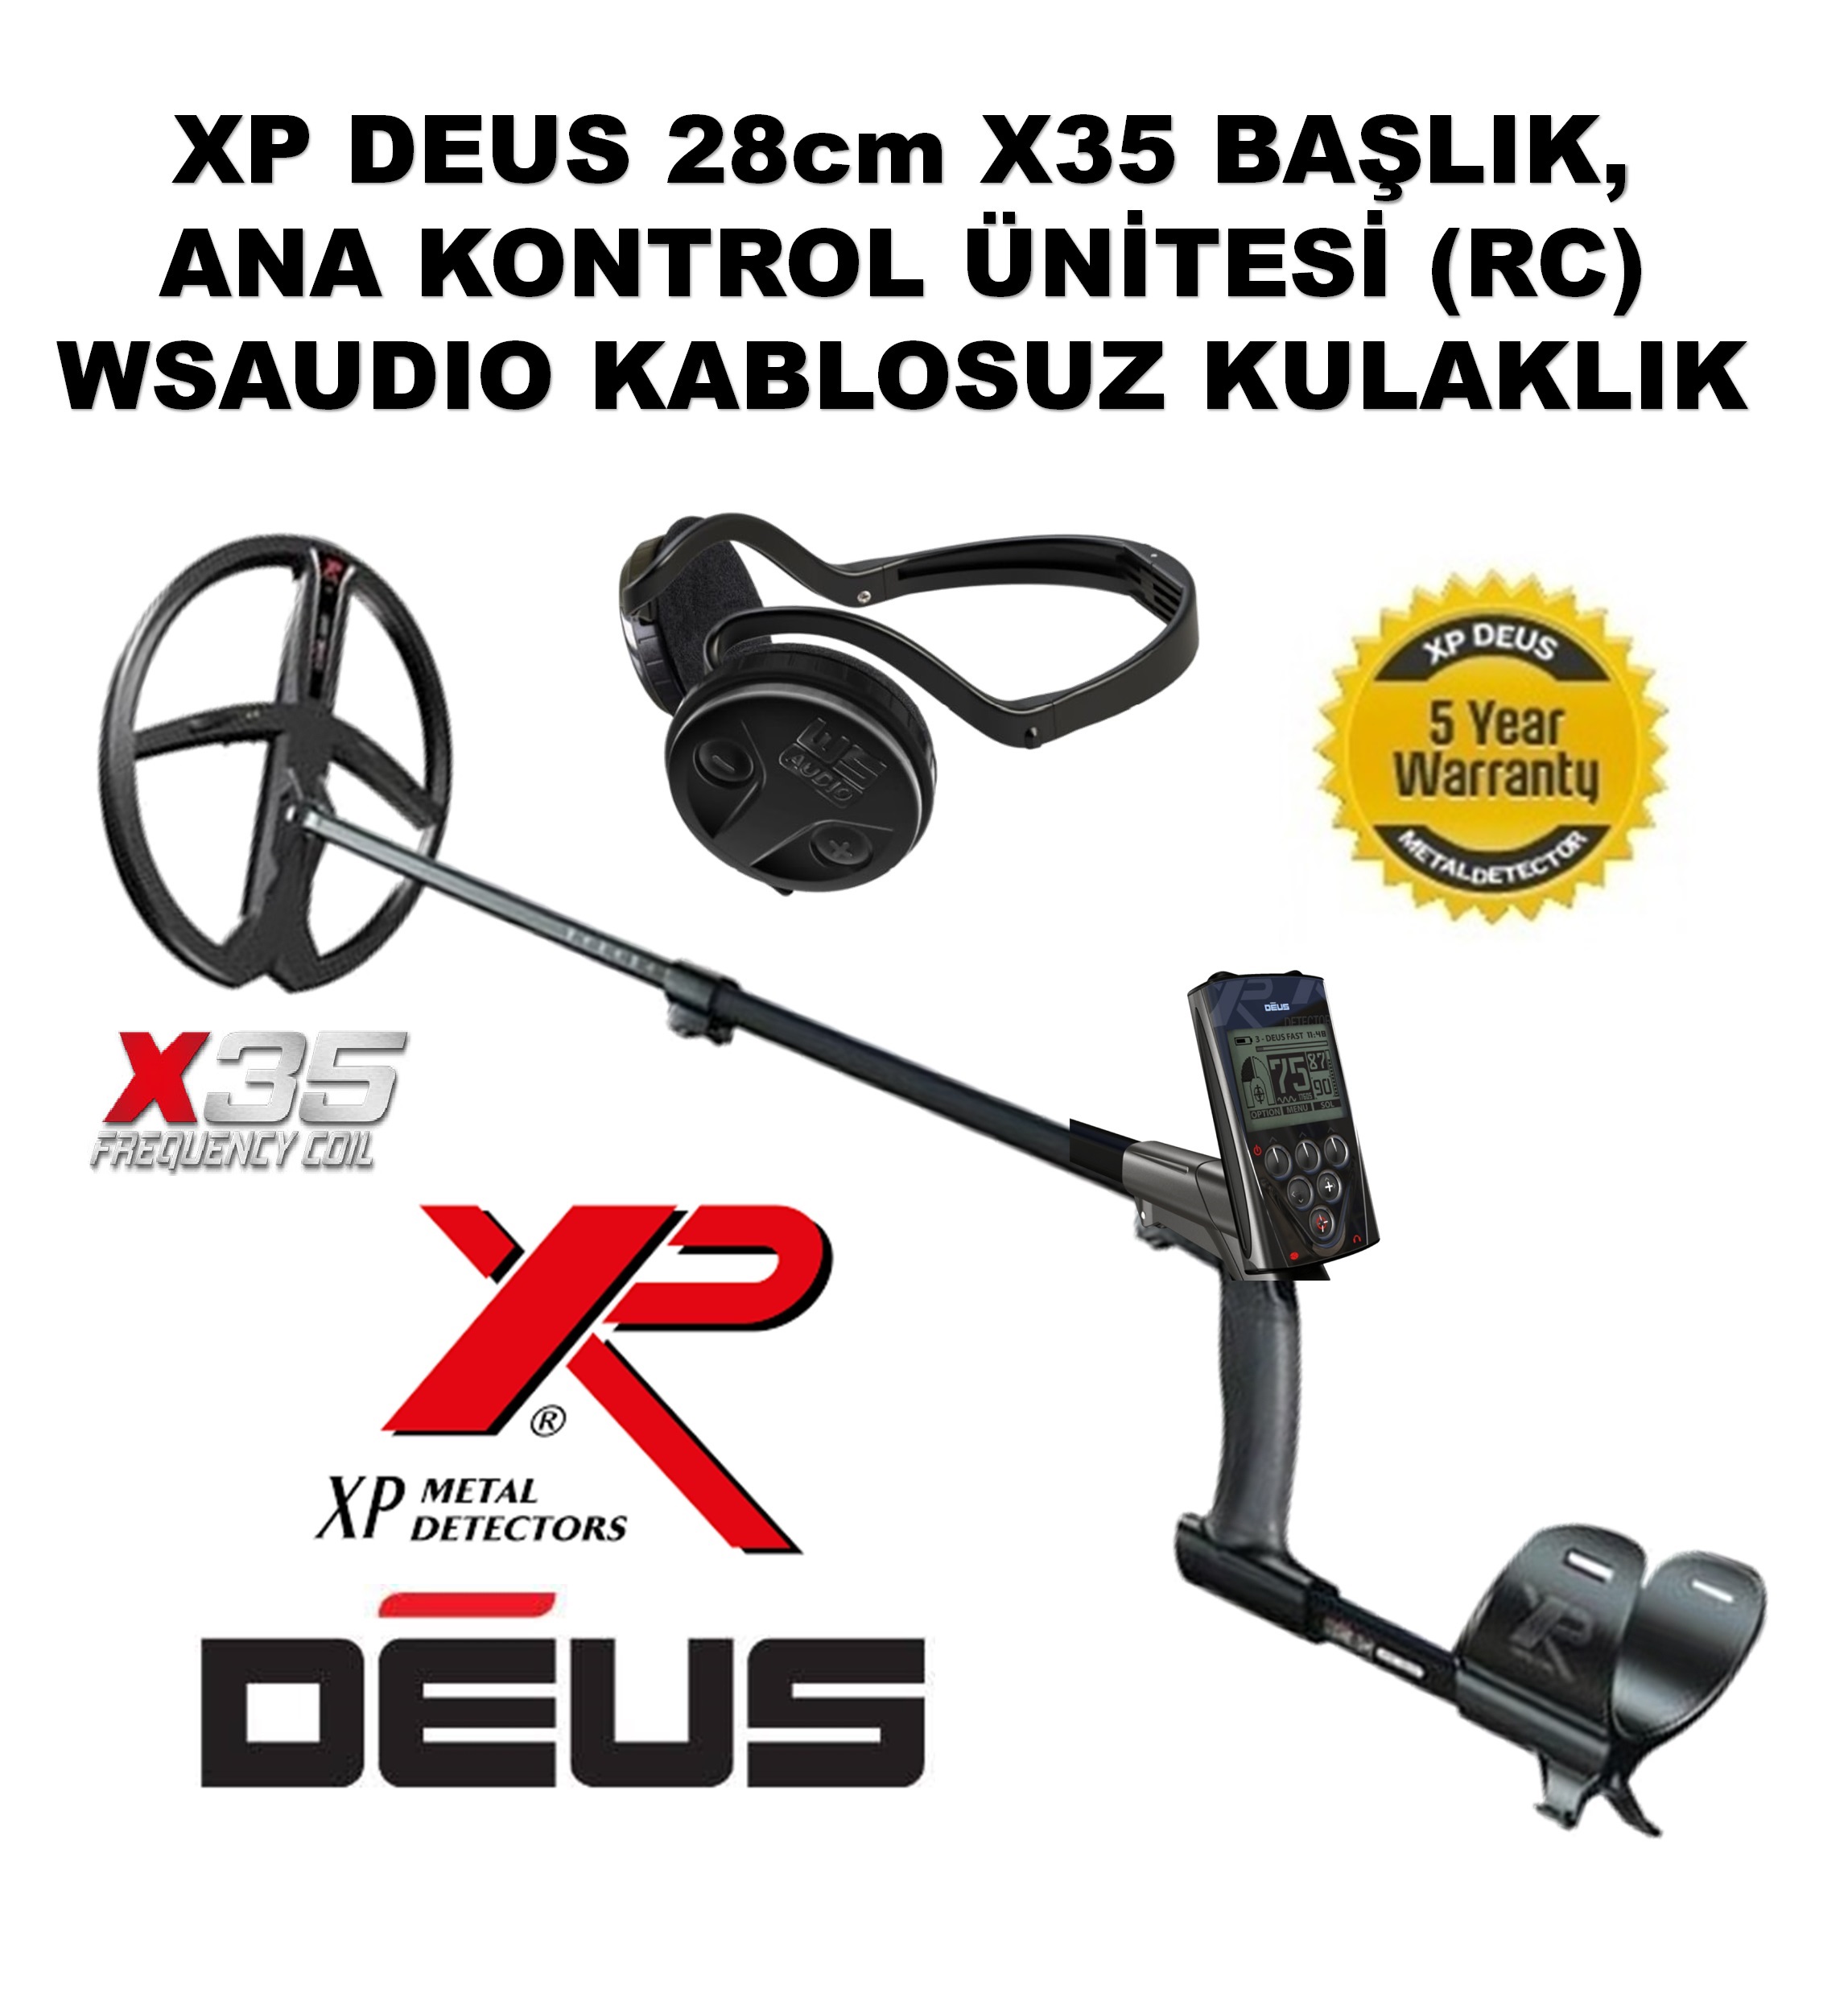 XP DEUS - 28cm X35 Başlık, Ana Kontrol Ünitesi (RC), WSAUDIO Kulaklık, FULL PAKET